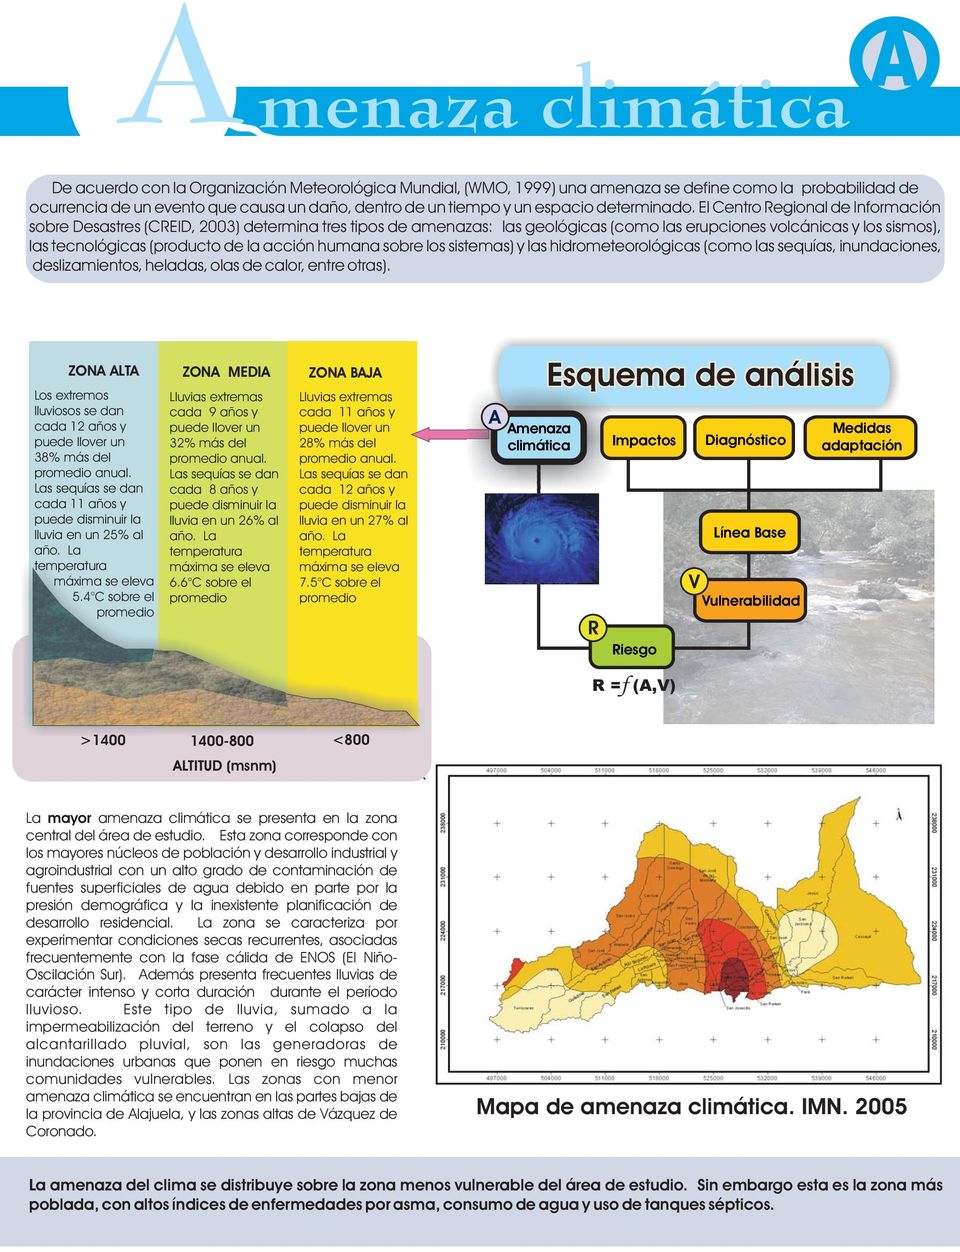 El Centro egional de Información sobre Desastres (CEID, 2003) determina tres tipos de amenazas: las geológicas (como las erupciones volcánicas y los sismos), las tecnológicas (producto de la acción